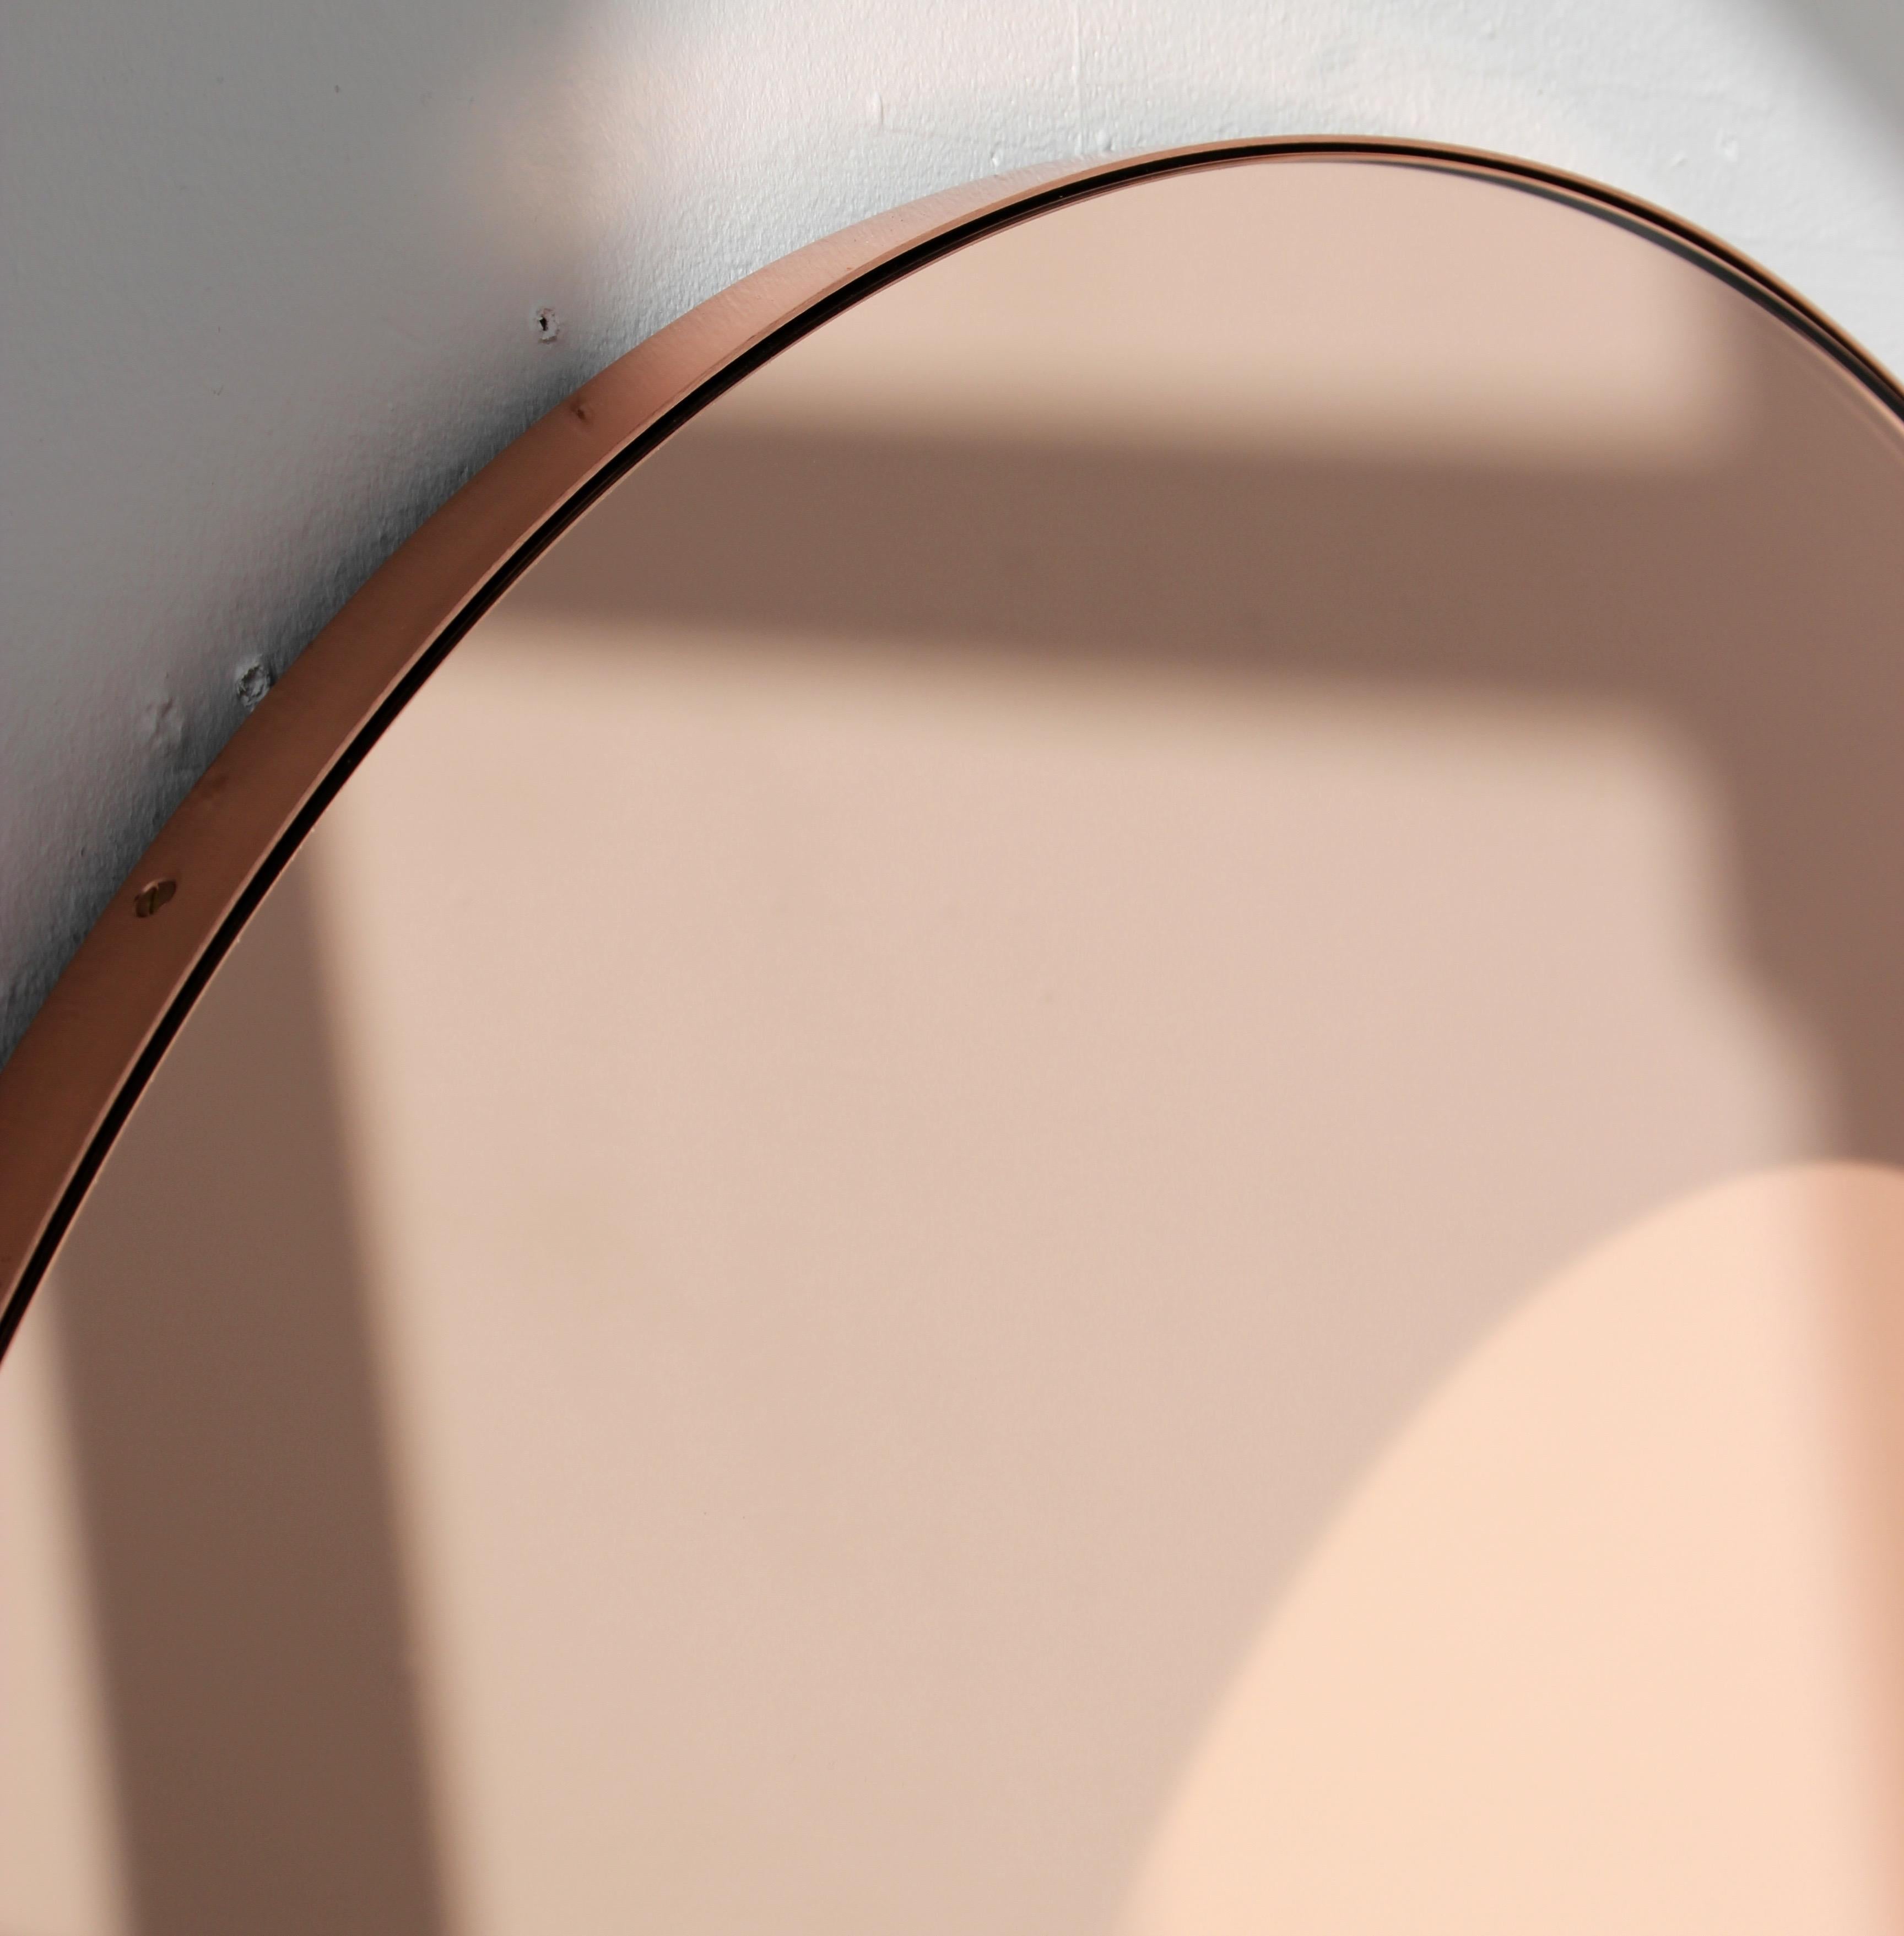 Organique Orbis Rose Gold Tinted Round Contemporary Mirror with Copper Frame, Large (miroir contemporain rond teinté d'or rose avec cadre en cuivre) en vente